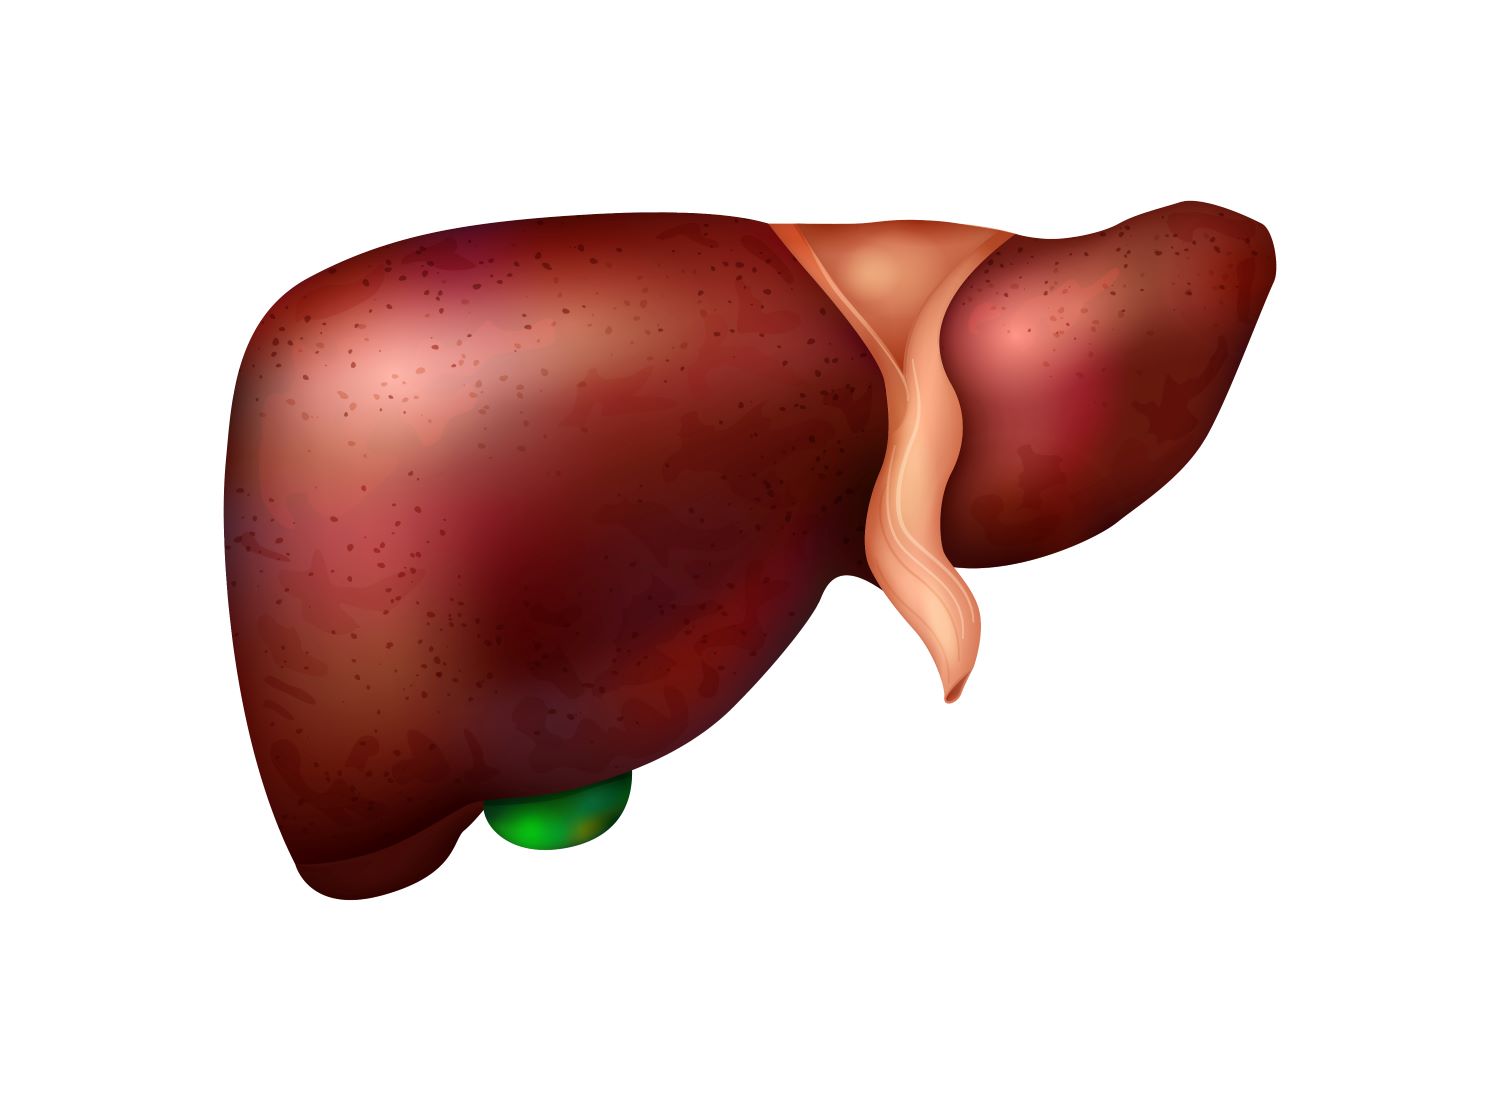 fígado com esteatose hepática